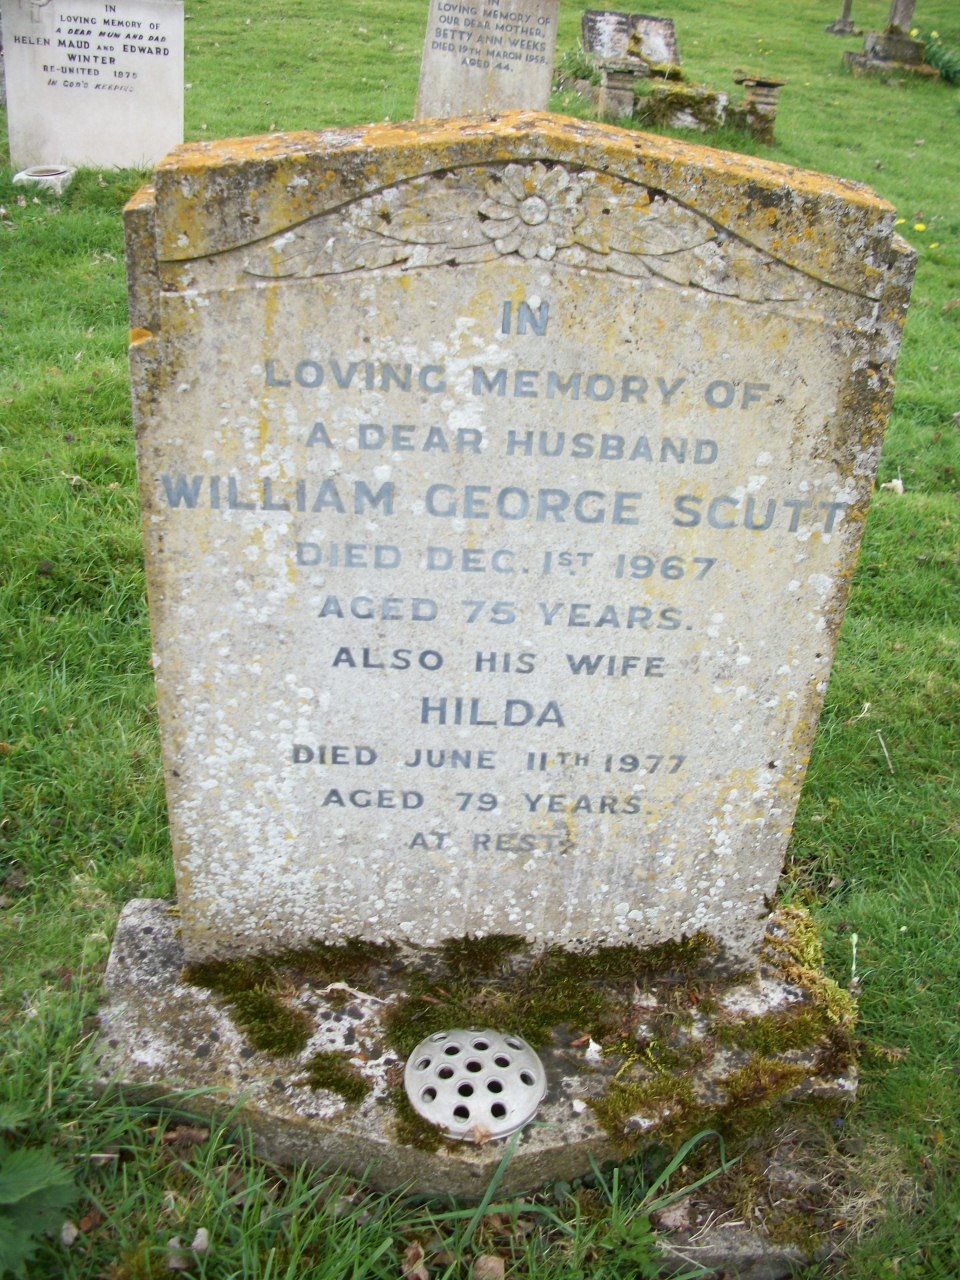 William George Scutt